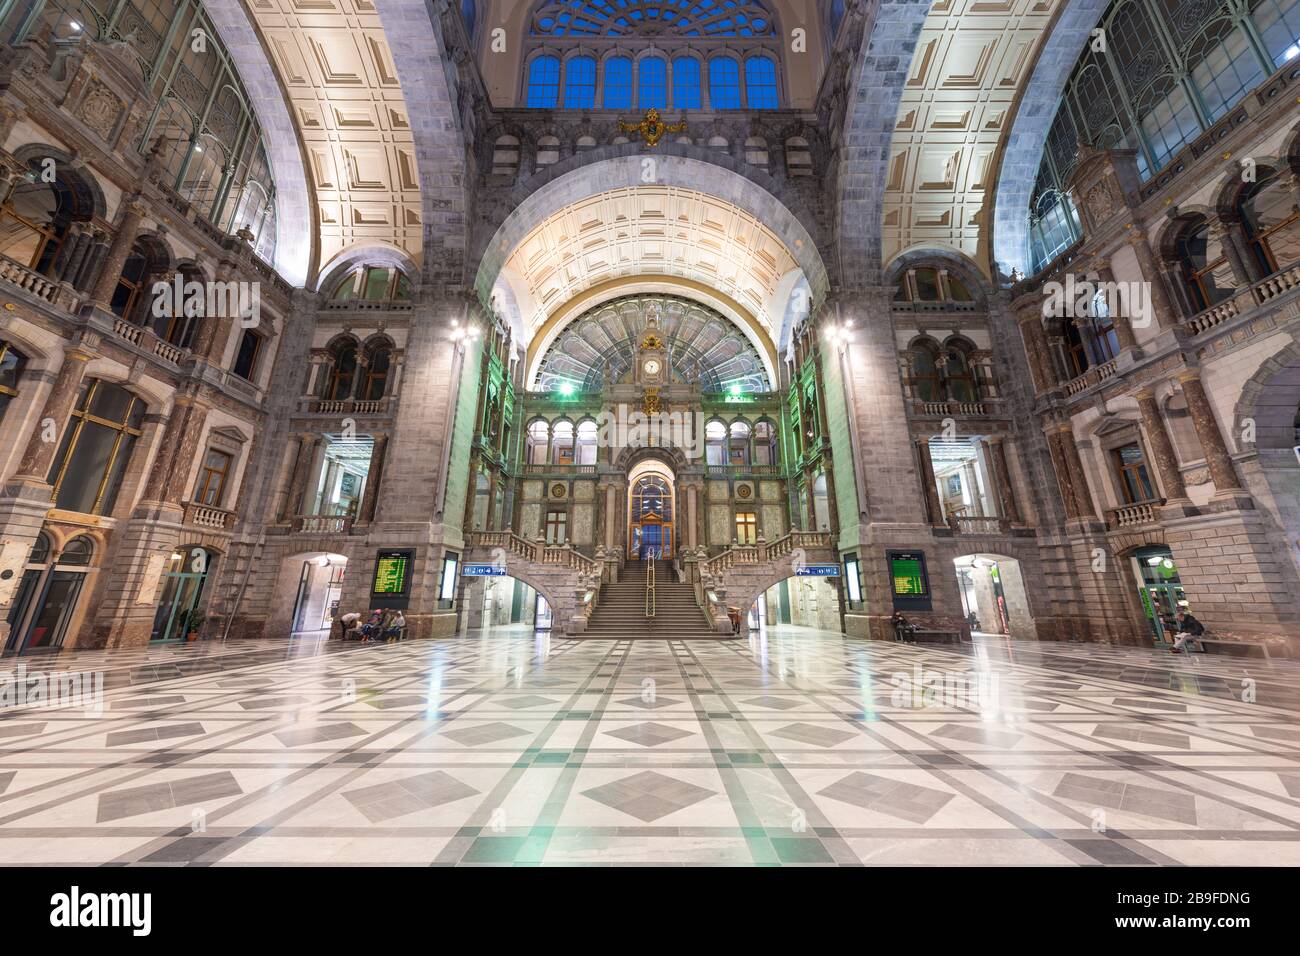 ANVERS, BELGIQUE - 5 MARS 2020: Hall principal de la gare centrale d'Anvers datant de 1905. Banque D'Images